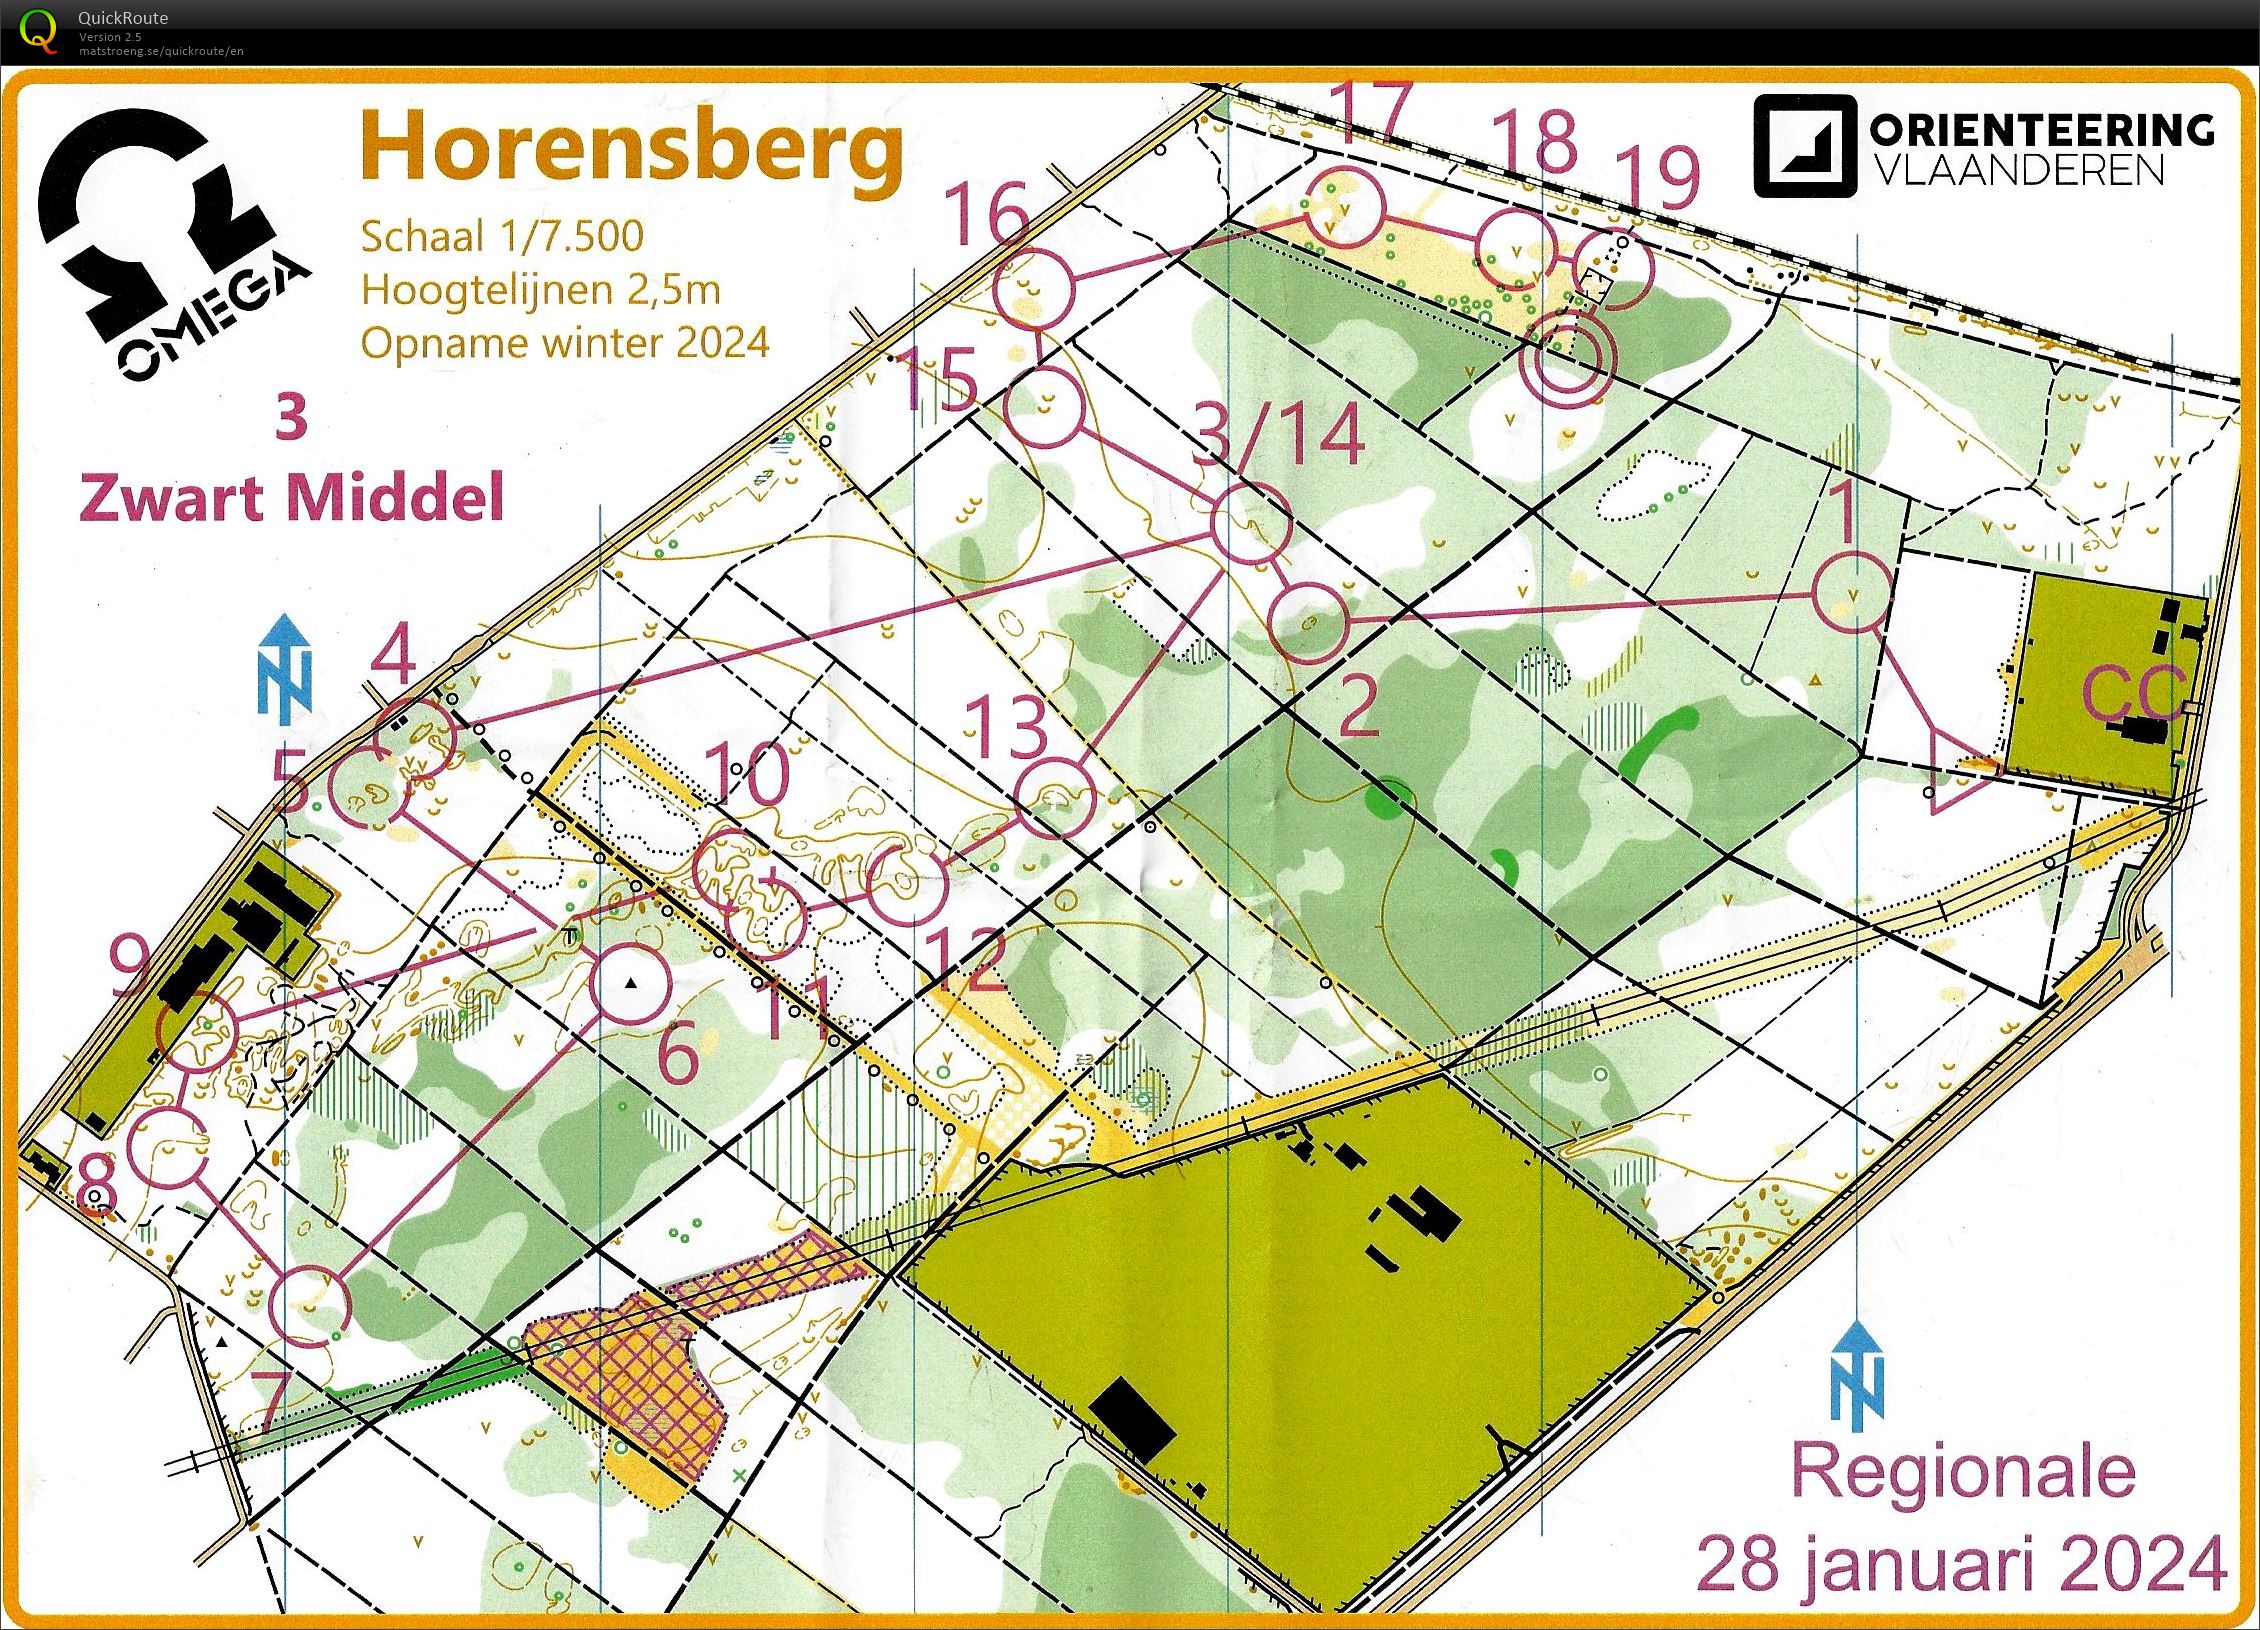 Horensberg (28/01/2024)